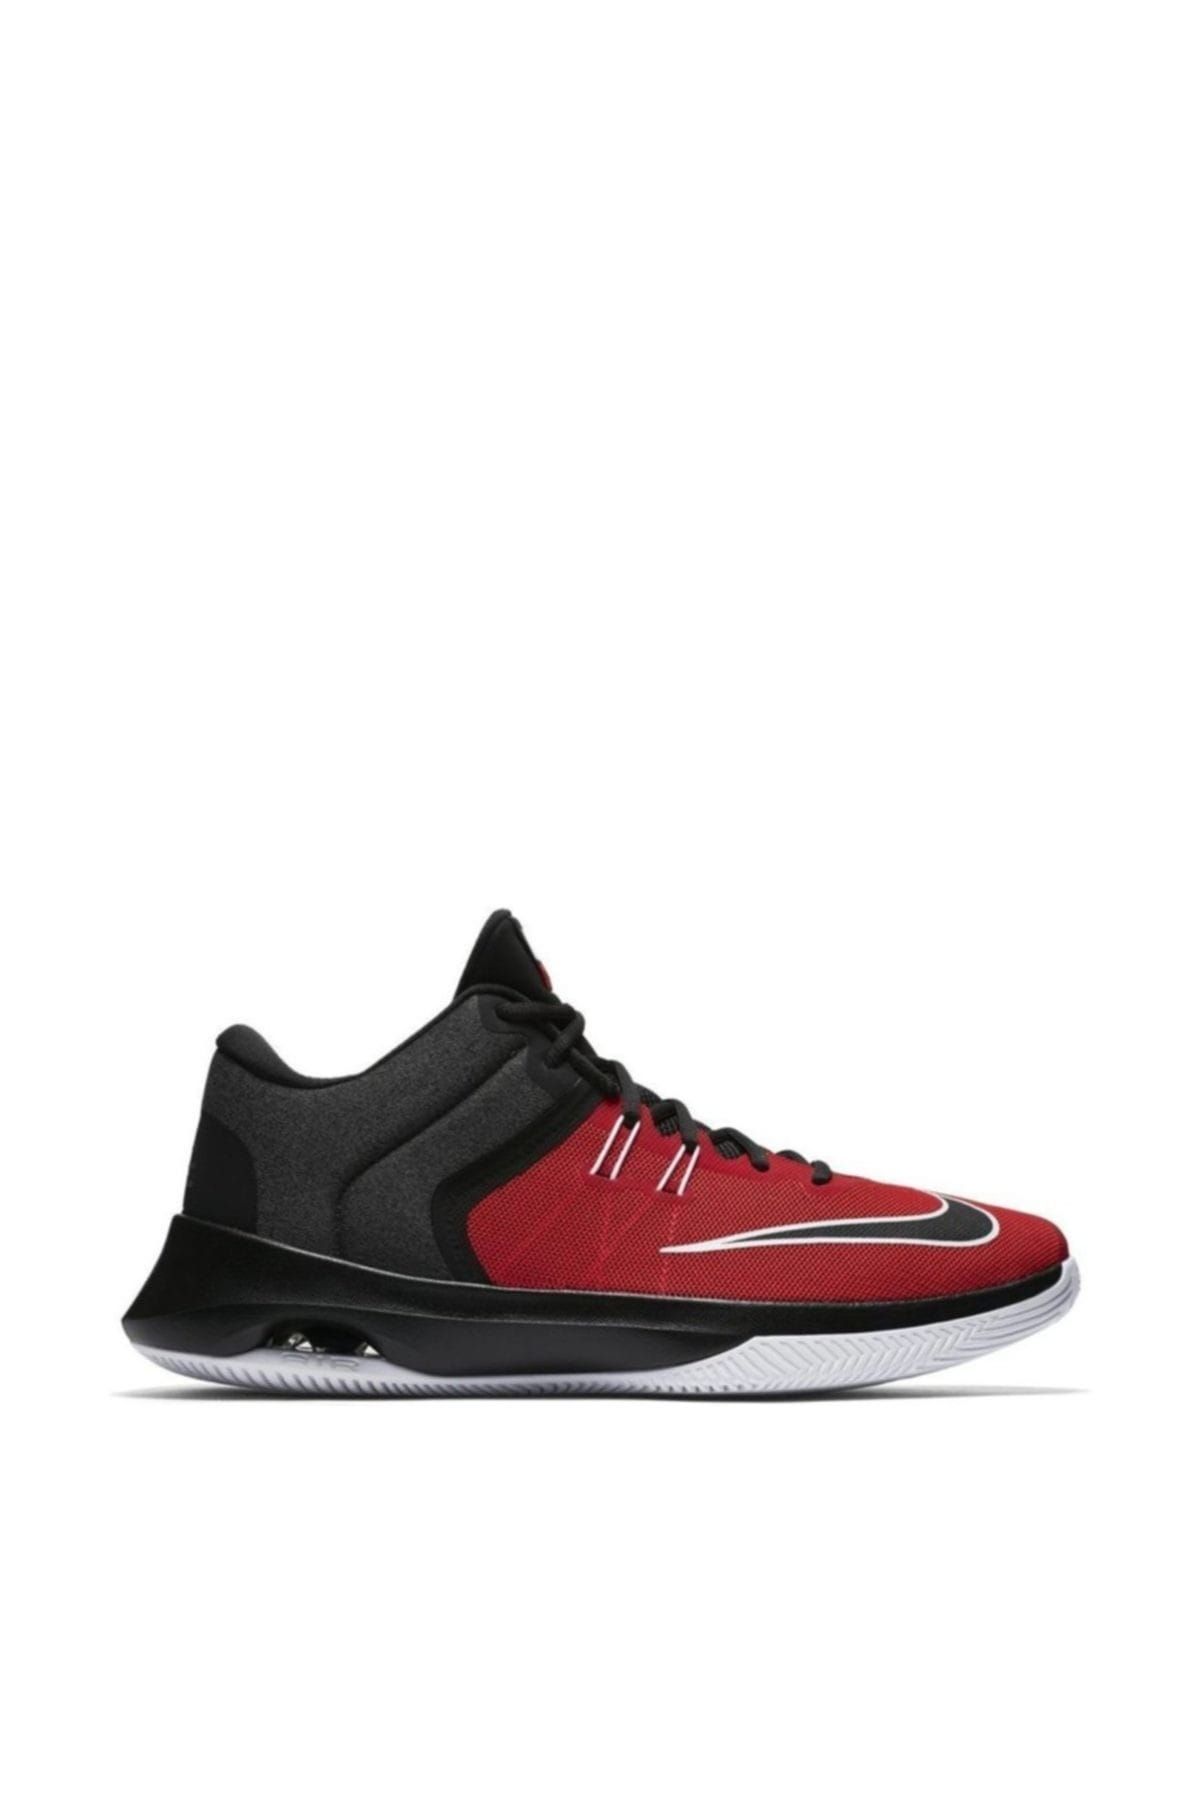 Nike Air Versitile Basketbol Ayakkabısı 921692-600